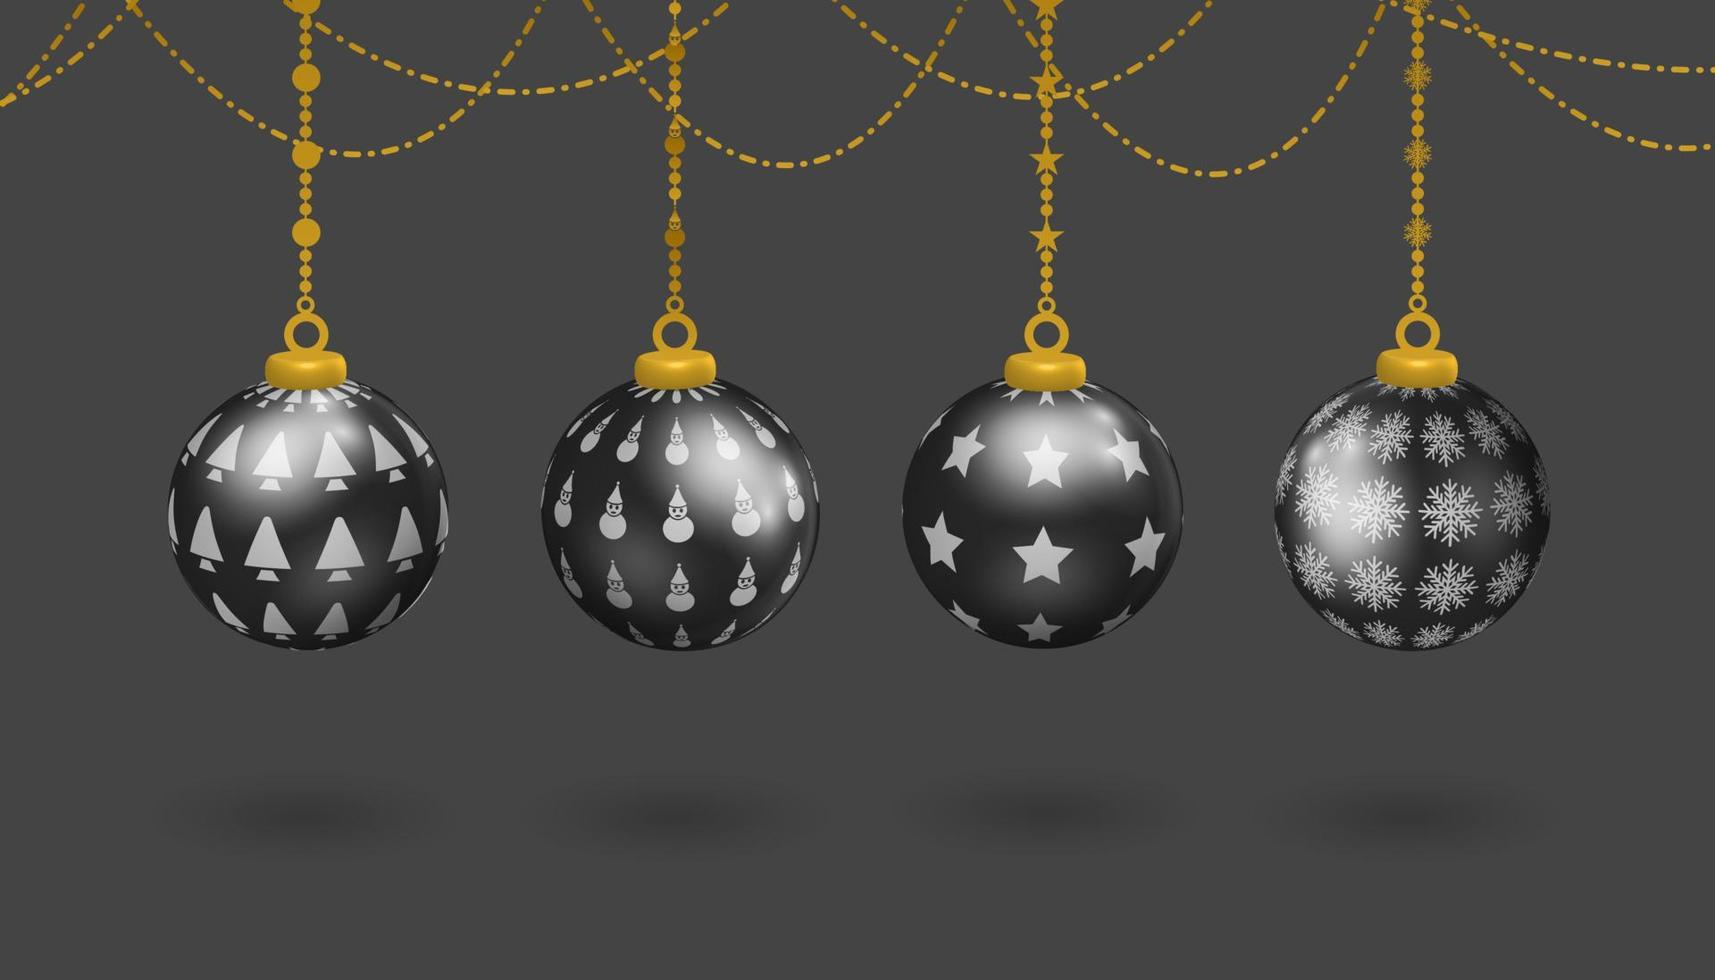 ensemble de décoration de boule suspendue noire, avec divers motifs de symboles, bonhomme de neige, arbre de noël, étoiles et flocons de neige, vecteur 3d réaliste décoratif de noël